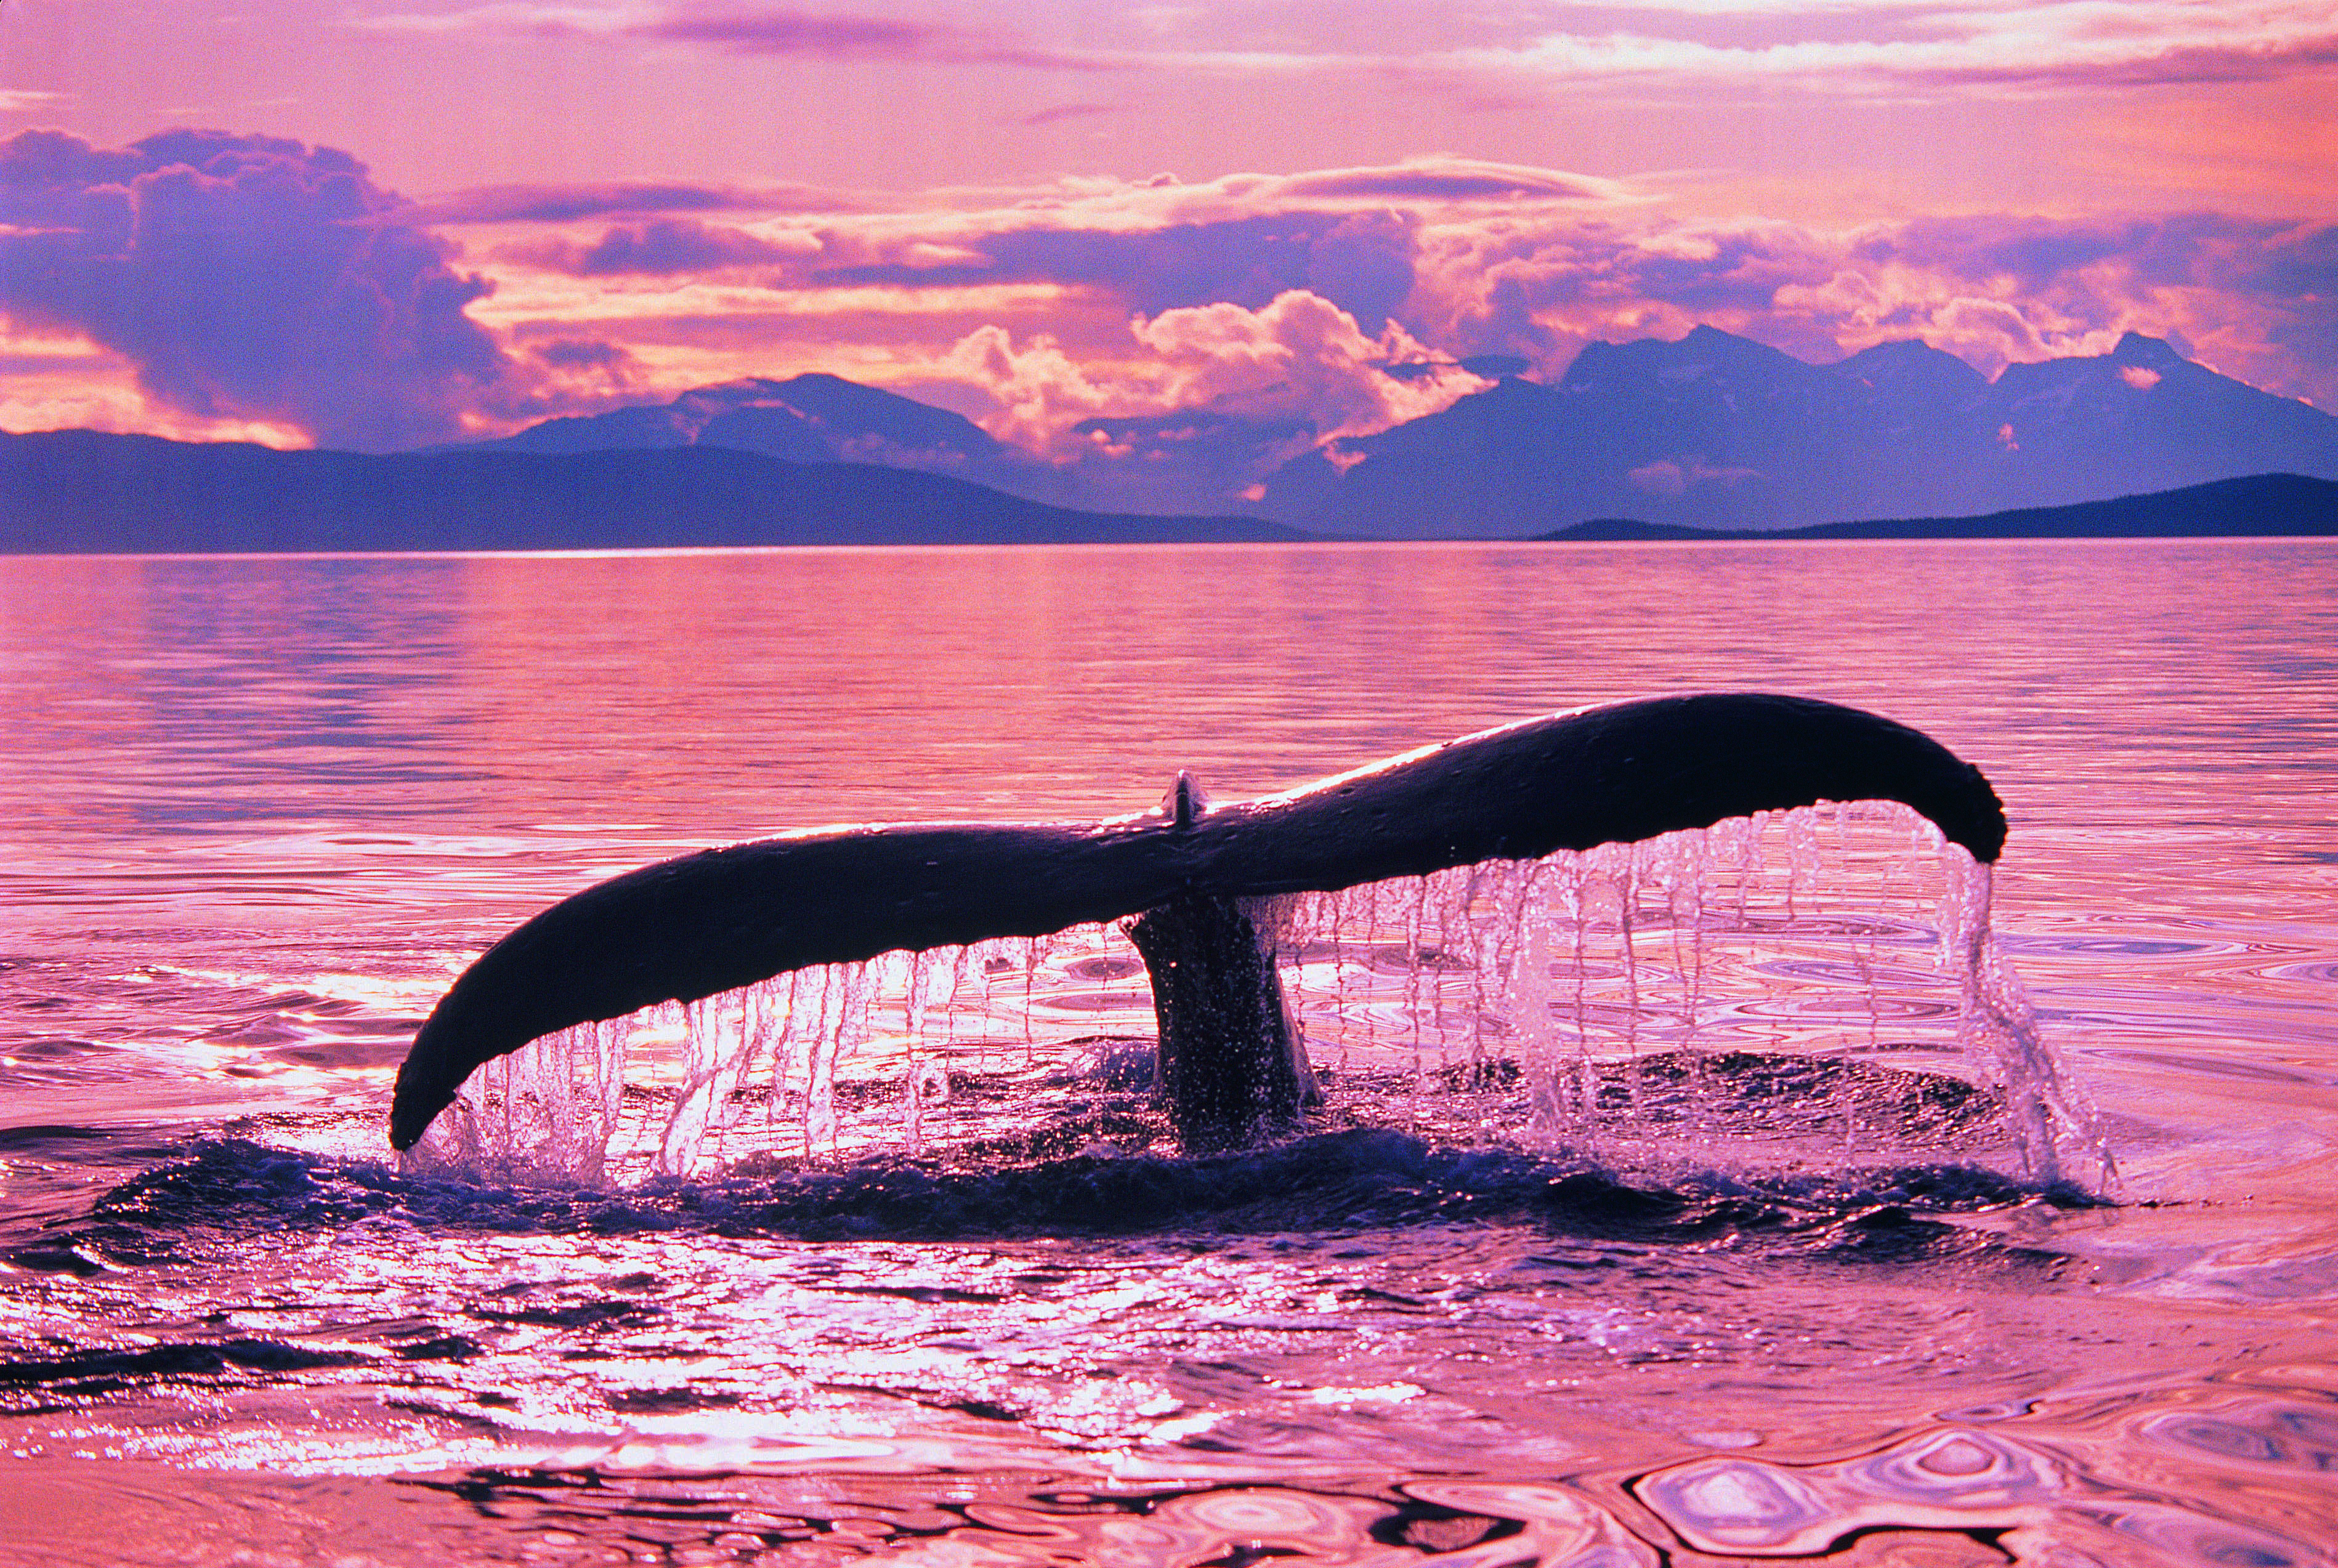 Whale in Alaska, an unspoilt wilderness